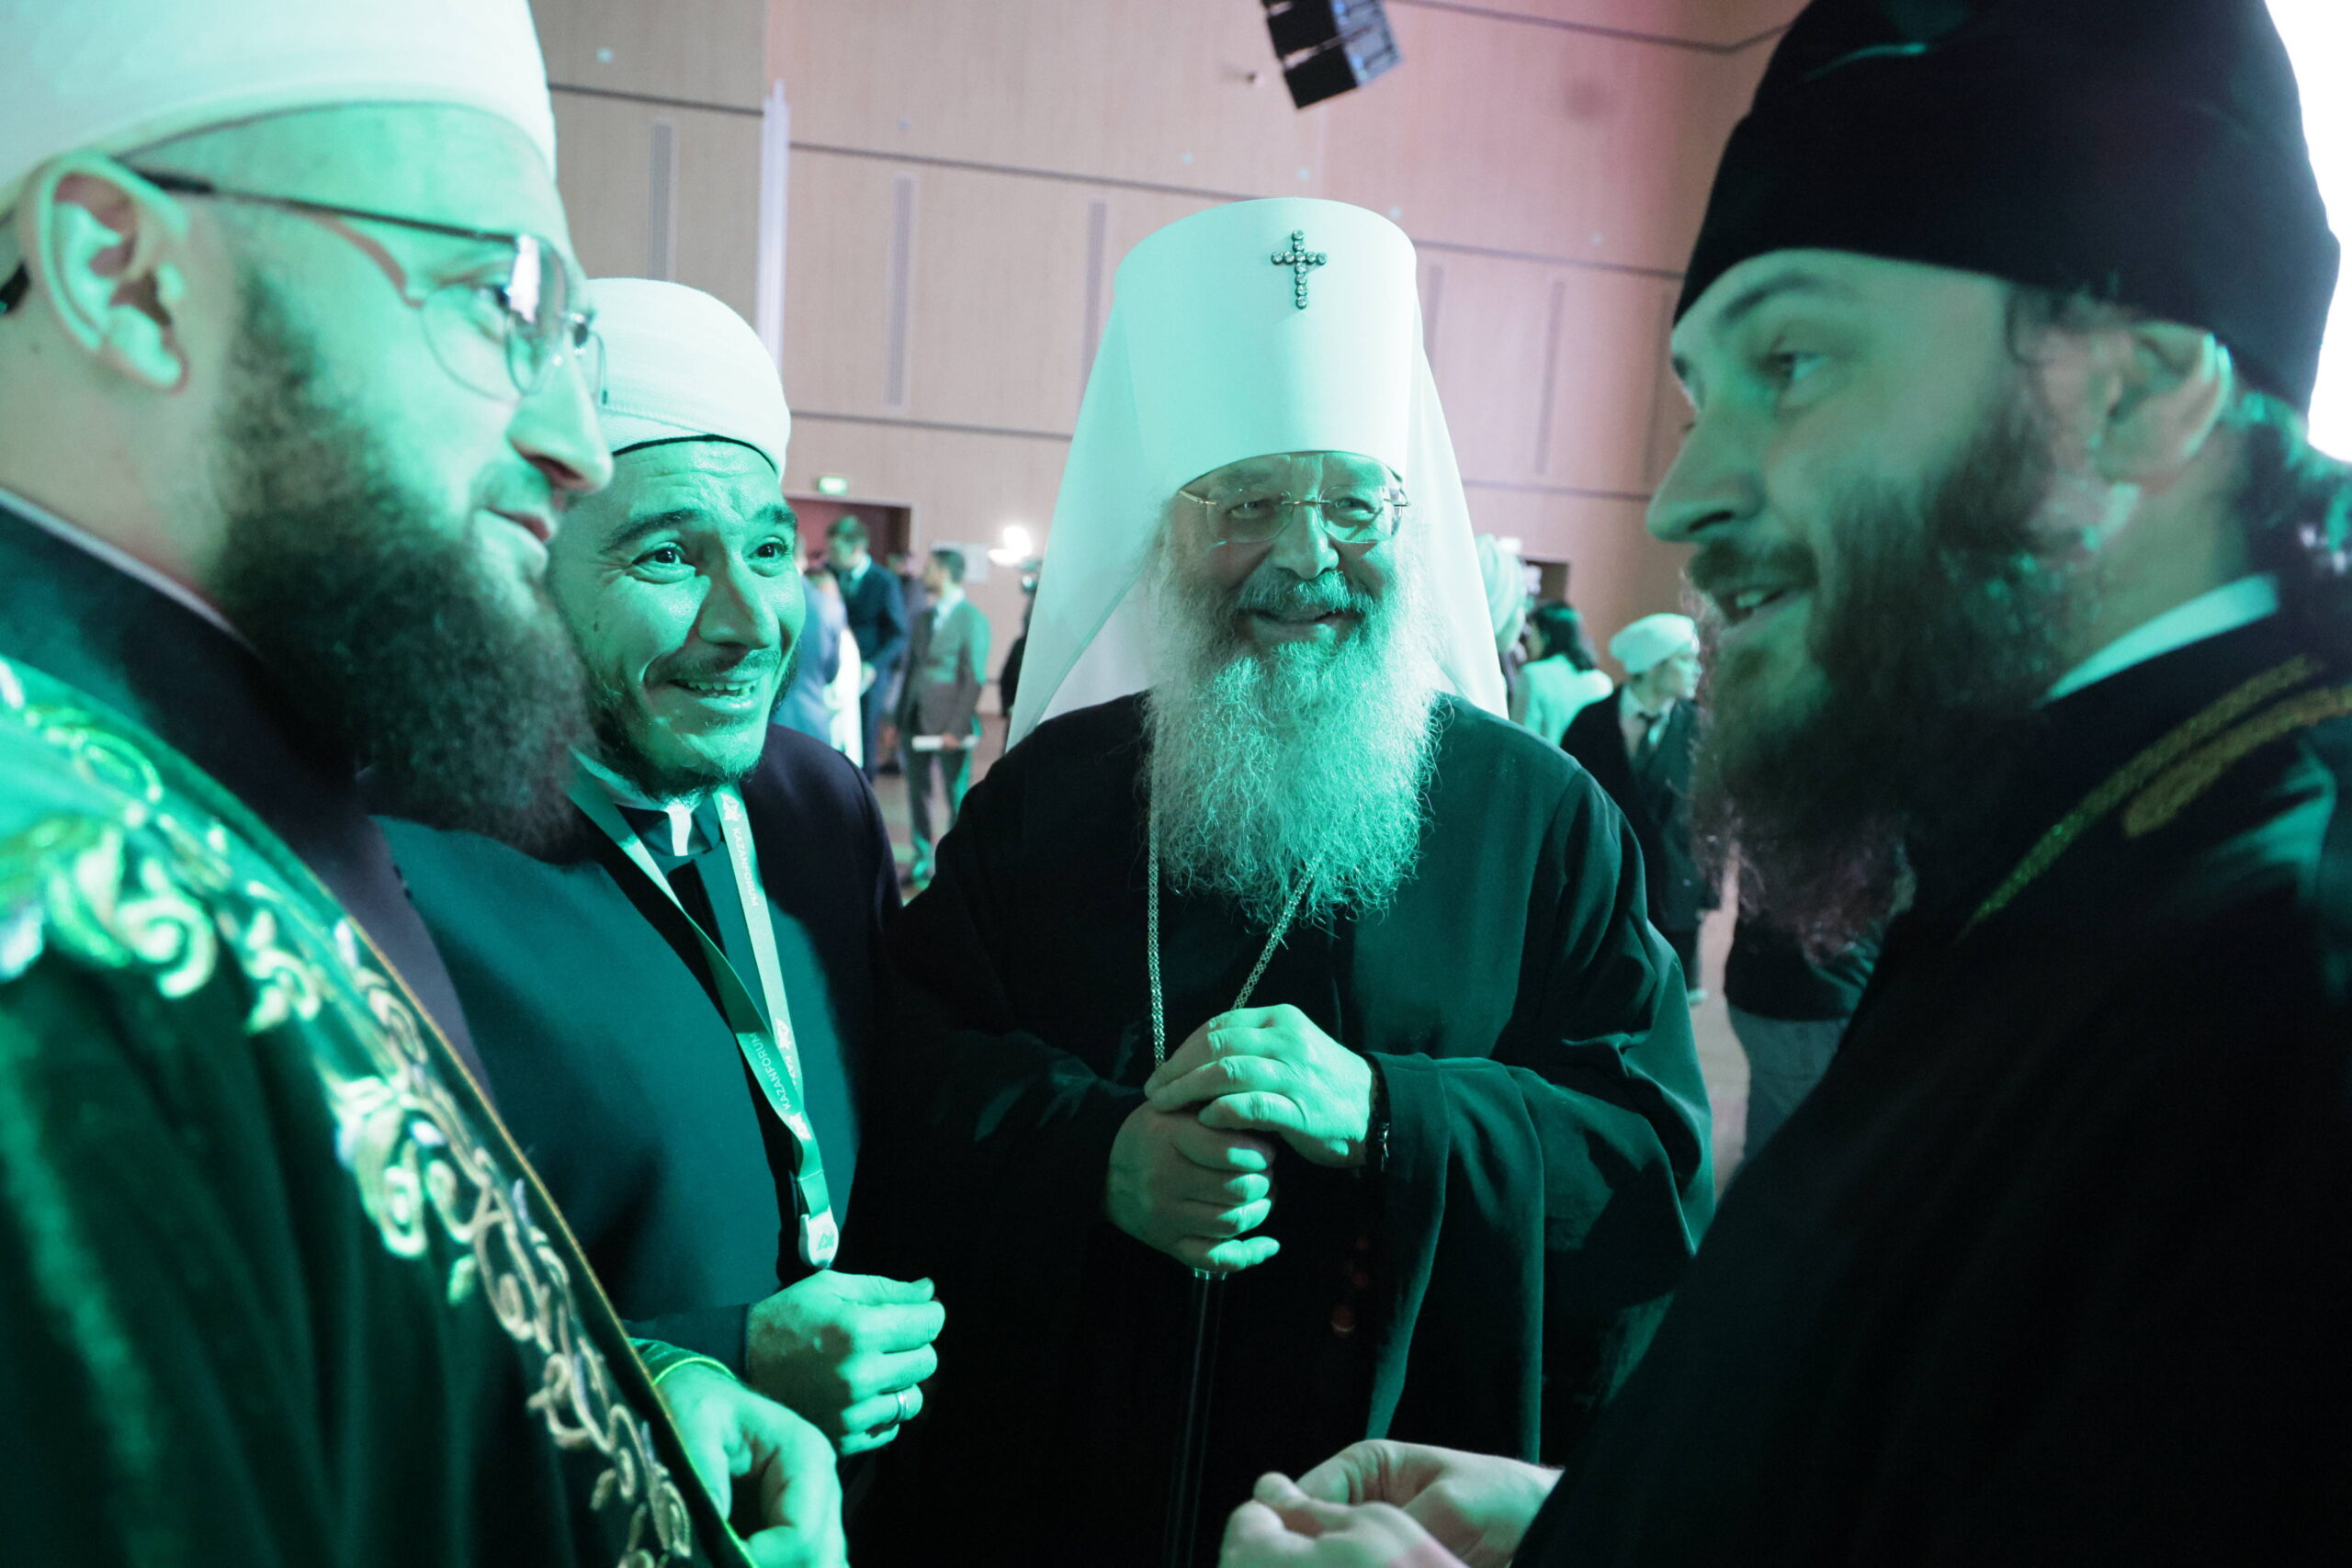 Le mufti du Tatarstan, un membre de la Commission de la Chambre civique du Tatarstan sur la préservation et le renforcement des valeurs spirituelles et morales traditionnelles de la Russie, Ilfar Khasanov, le métropolite Kirill de Kazan et du Tatarstan (de gauche à droite) assistent à une session lors du 15e Forum économique international Russie - Monde islamique à Bolshiye Kabany, au sud-est de Kazan. © Yegor Aleyev/TASS/Sipa USA